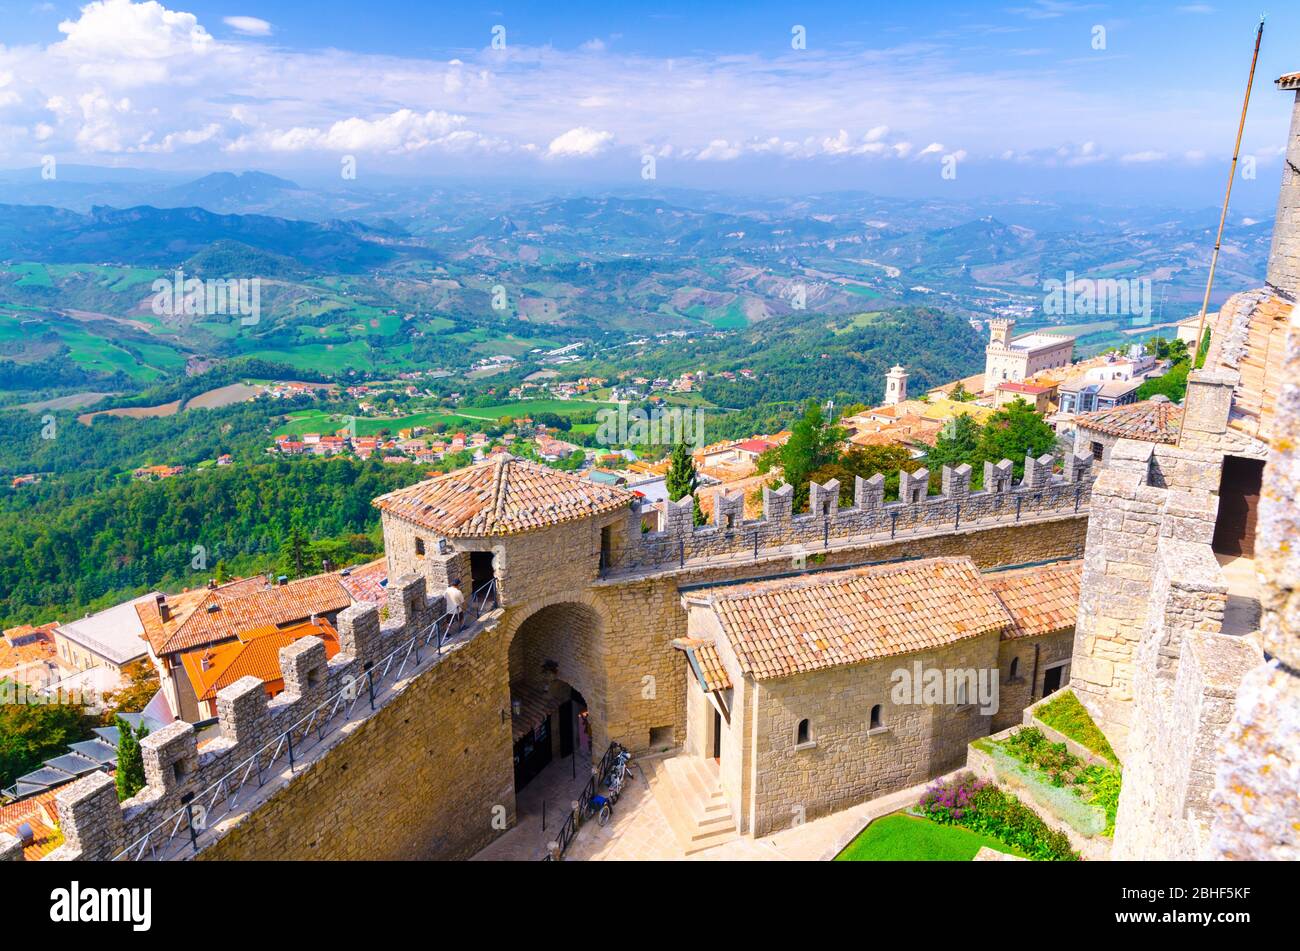 Republik San Marino, 18. September 2018: Luftbild von oben Landschaft mit Tal, grünen Hügeln, Feldern, Dörfern von Vorstadtviertel, blauer Himmel Hintergrund und Stein Festung Wand und Turm mit Merlonen Stockfoto